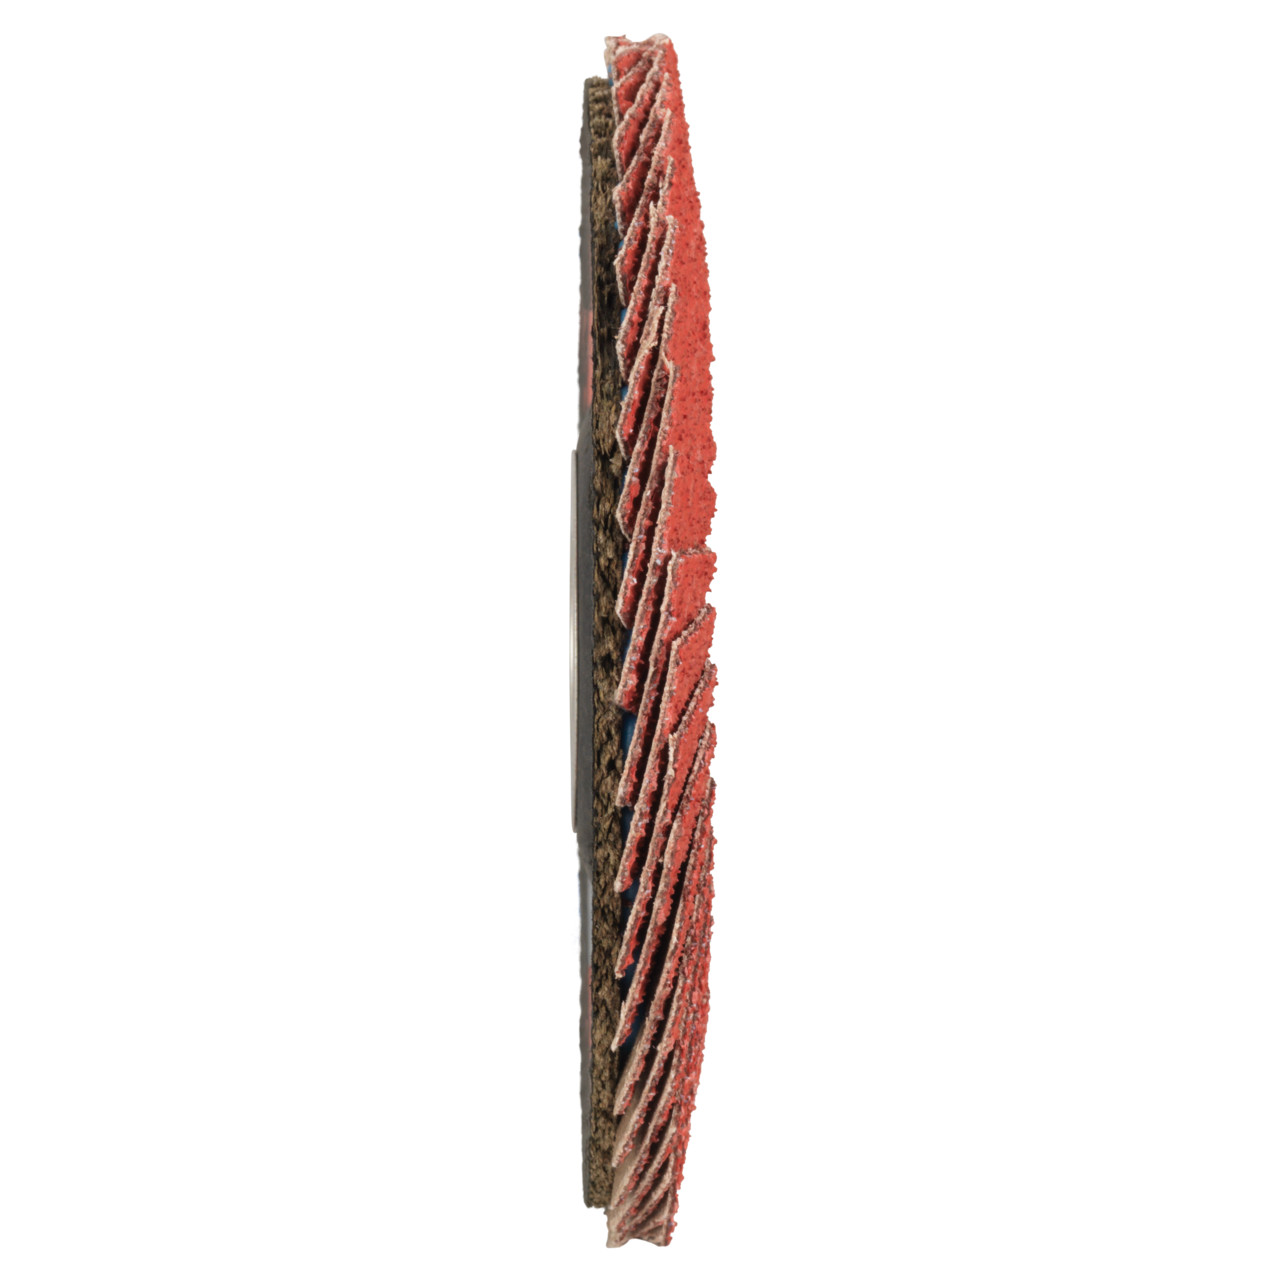 Tyrolit Getande borgring DxH 125x22,23 CERAMIC voor roestvrij staal, P60, vorm: 28A - rechte uitvoering (glasvezeldrager huisversie), Art. 719800